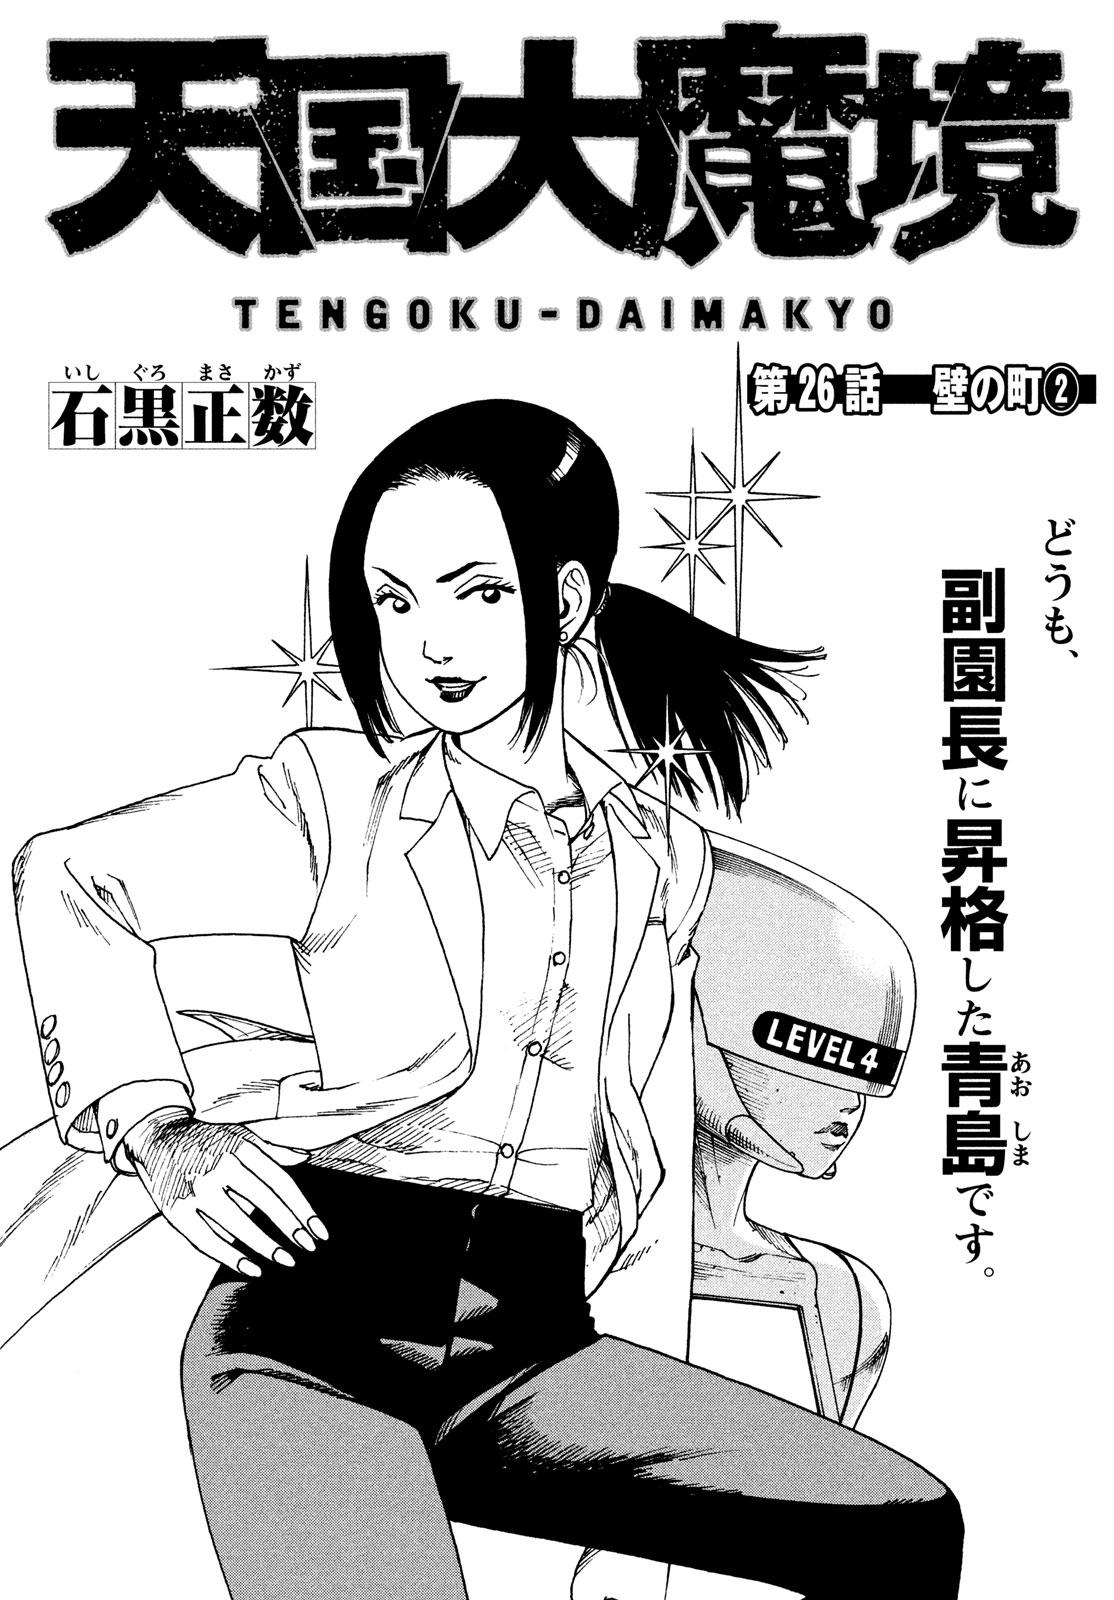 Read Tengoku Daimakyou Chapter 42: Mikura - Manganelo